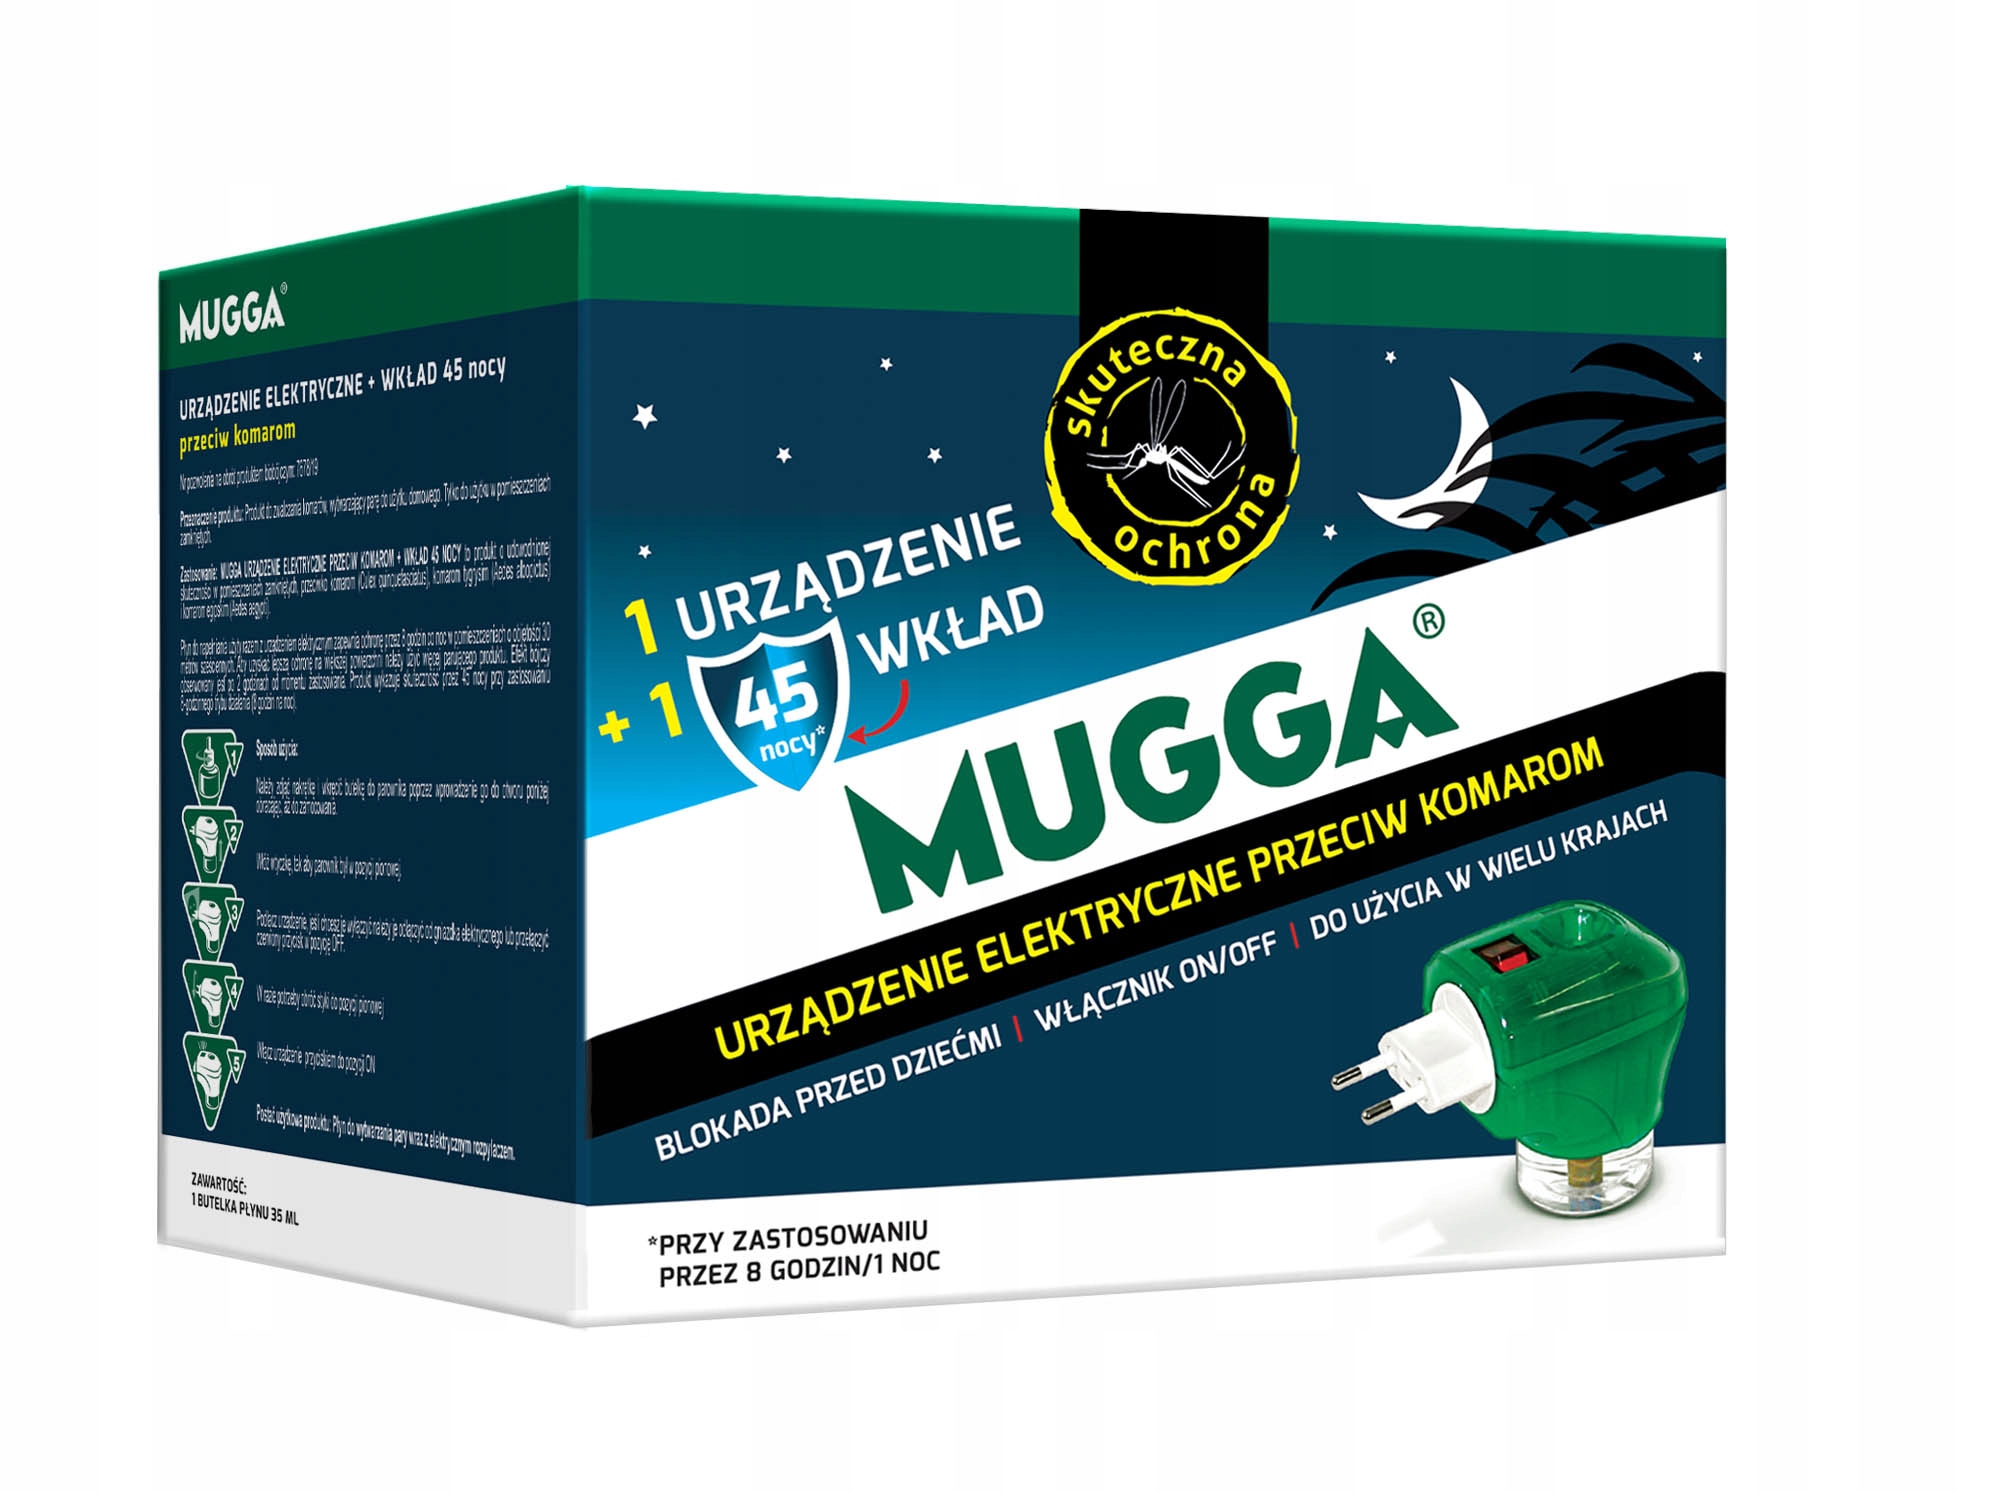 Mugga elektro + москитная контактная жидкость 45 ночей